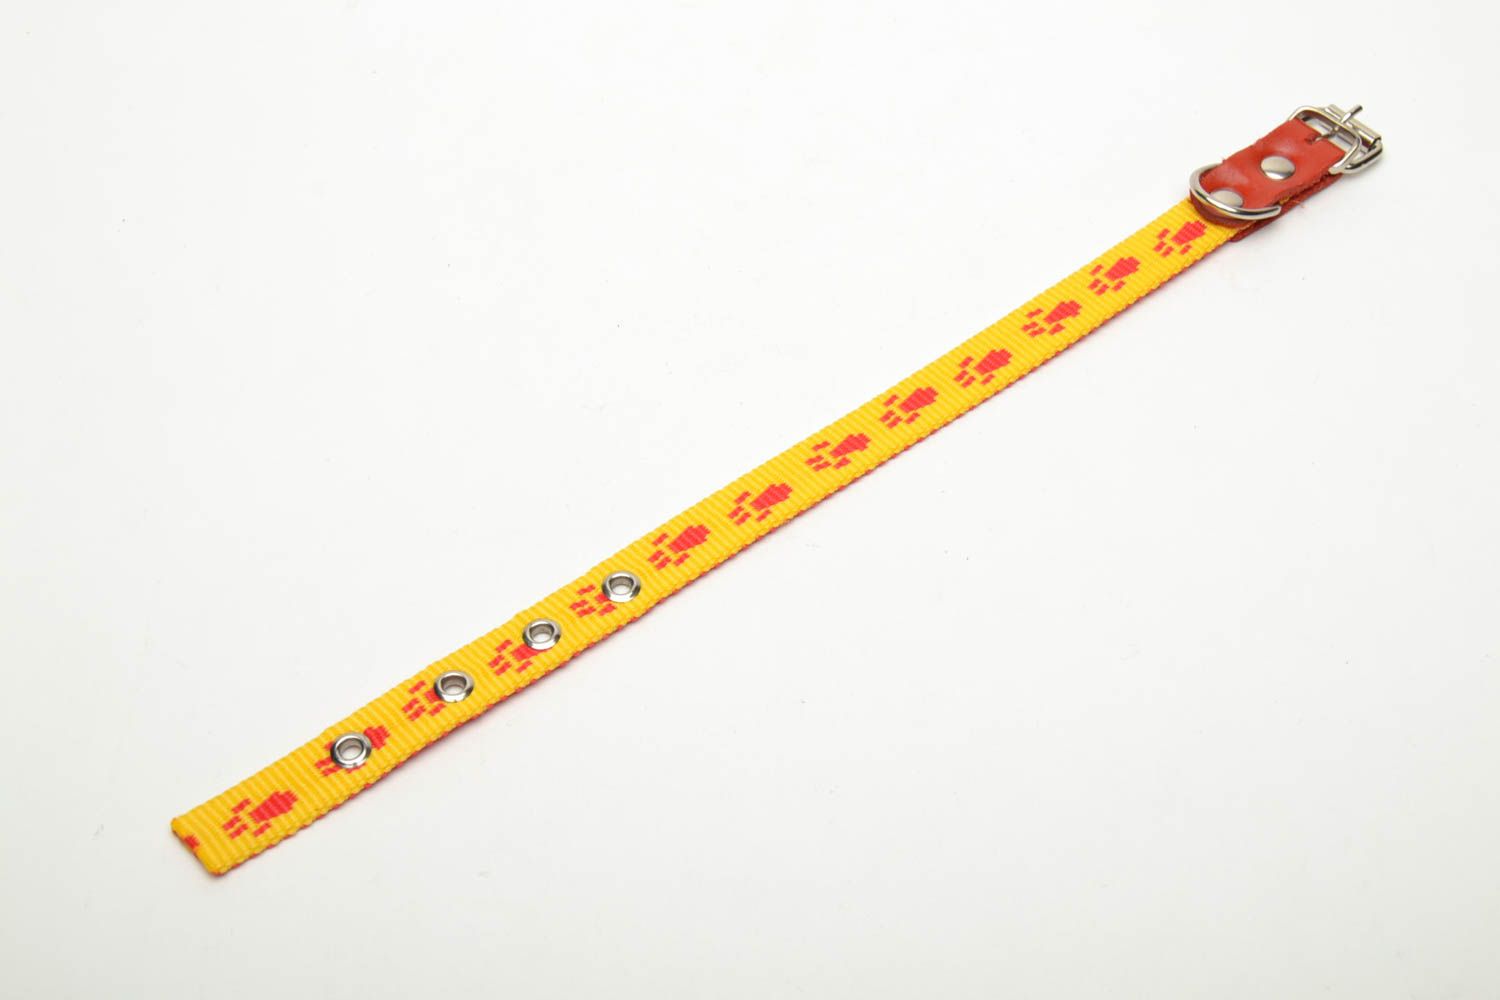 Textil Halsband für Hund in Gelb foto 4